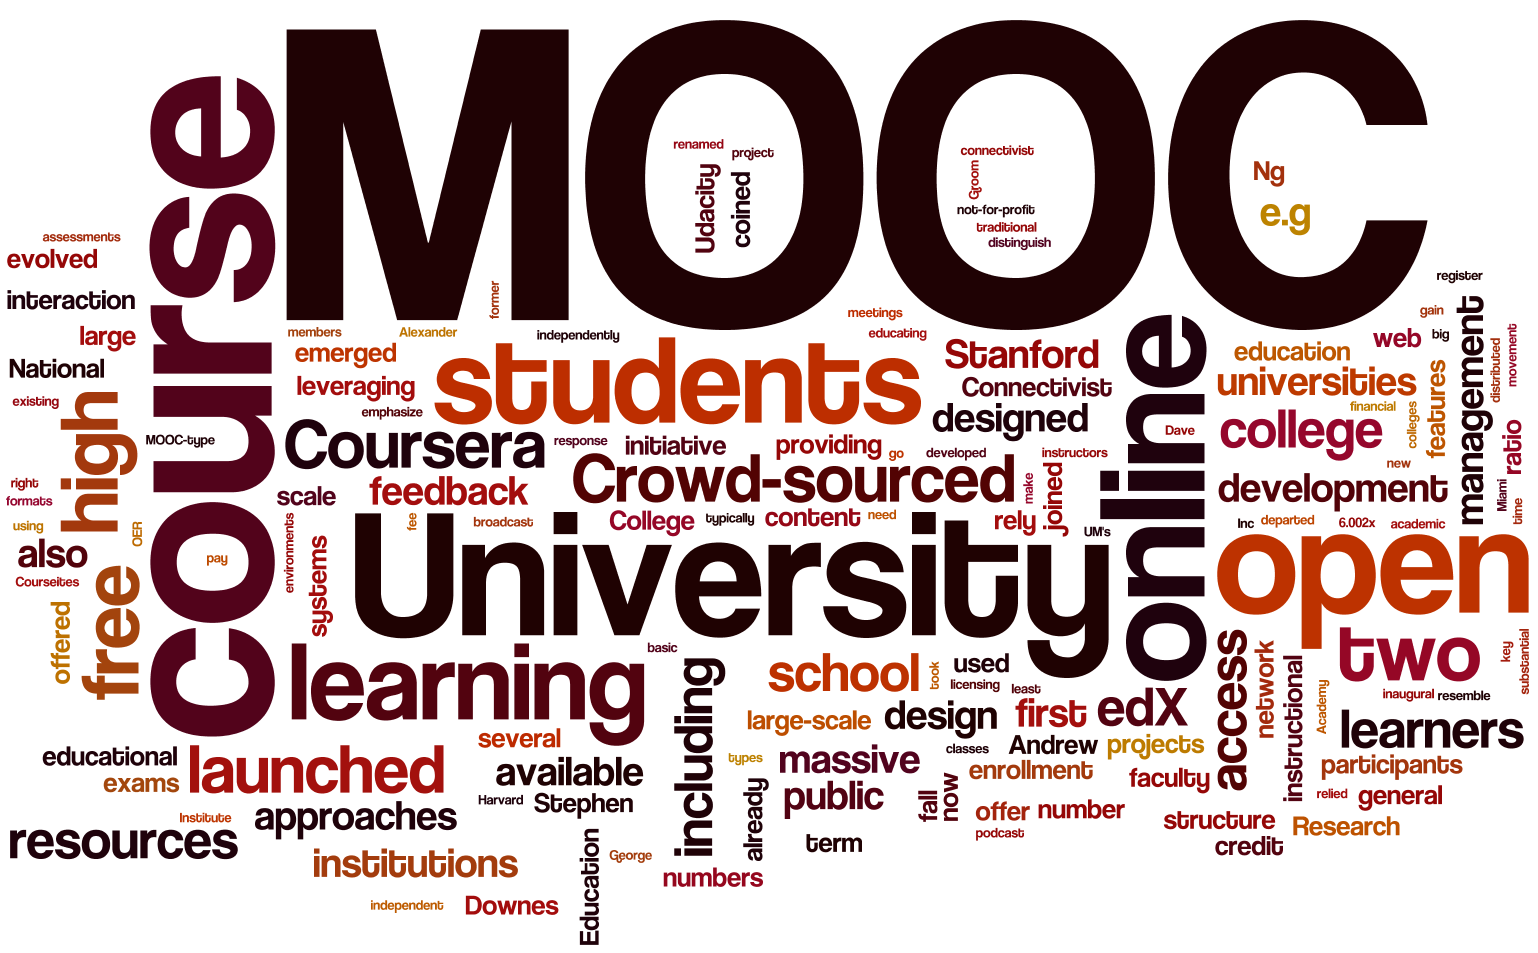 MOOC 1